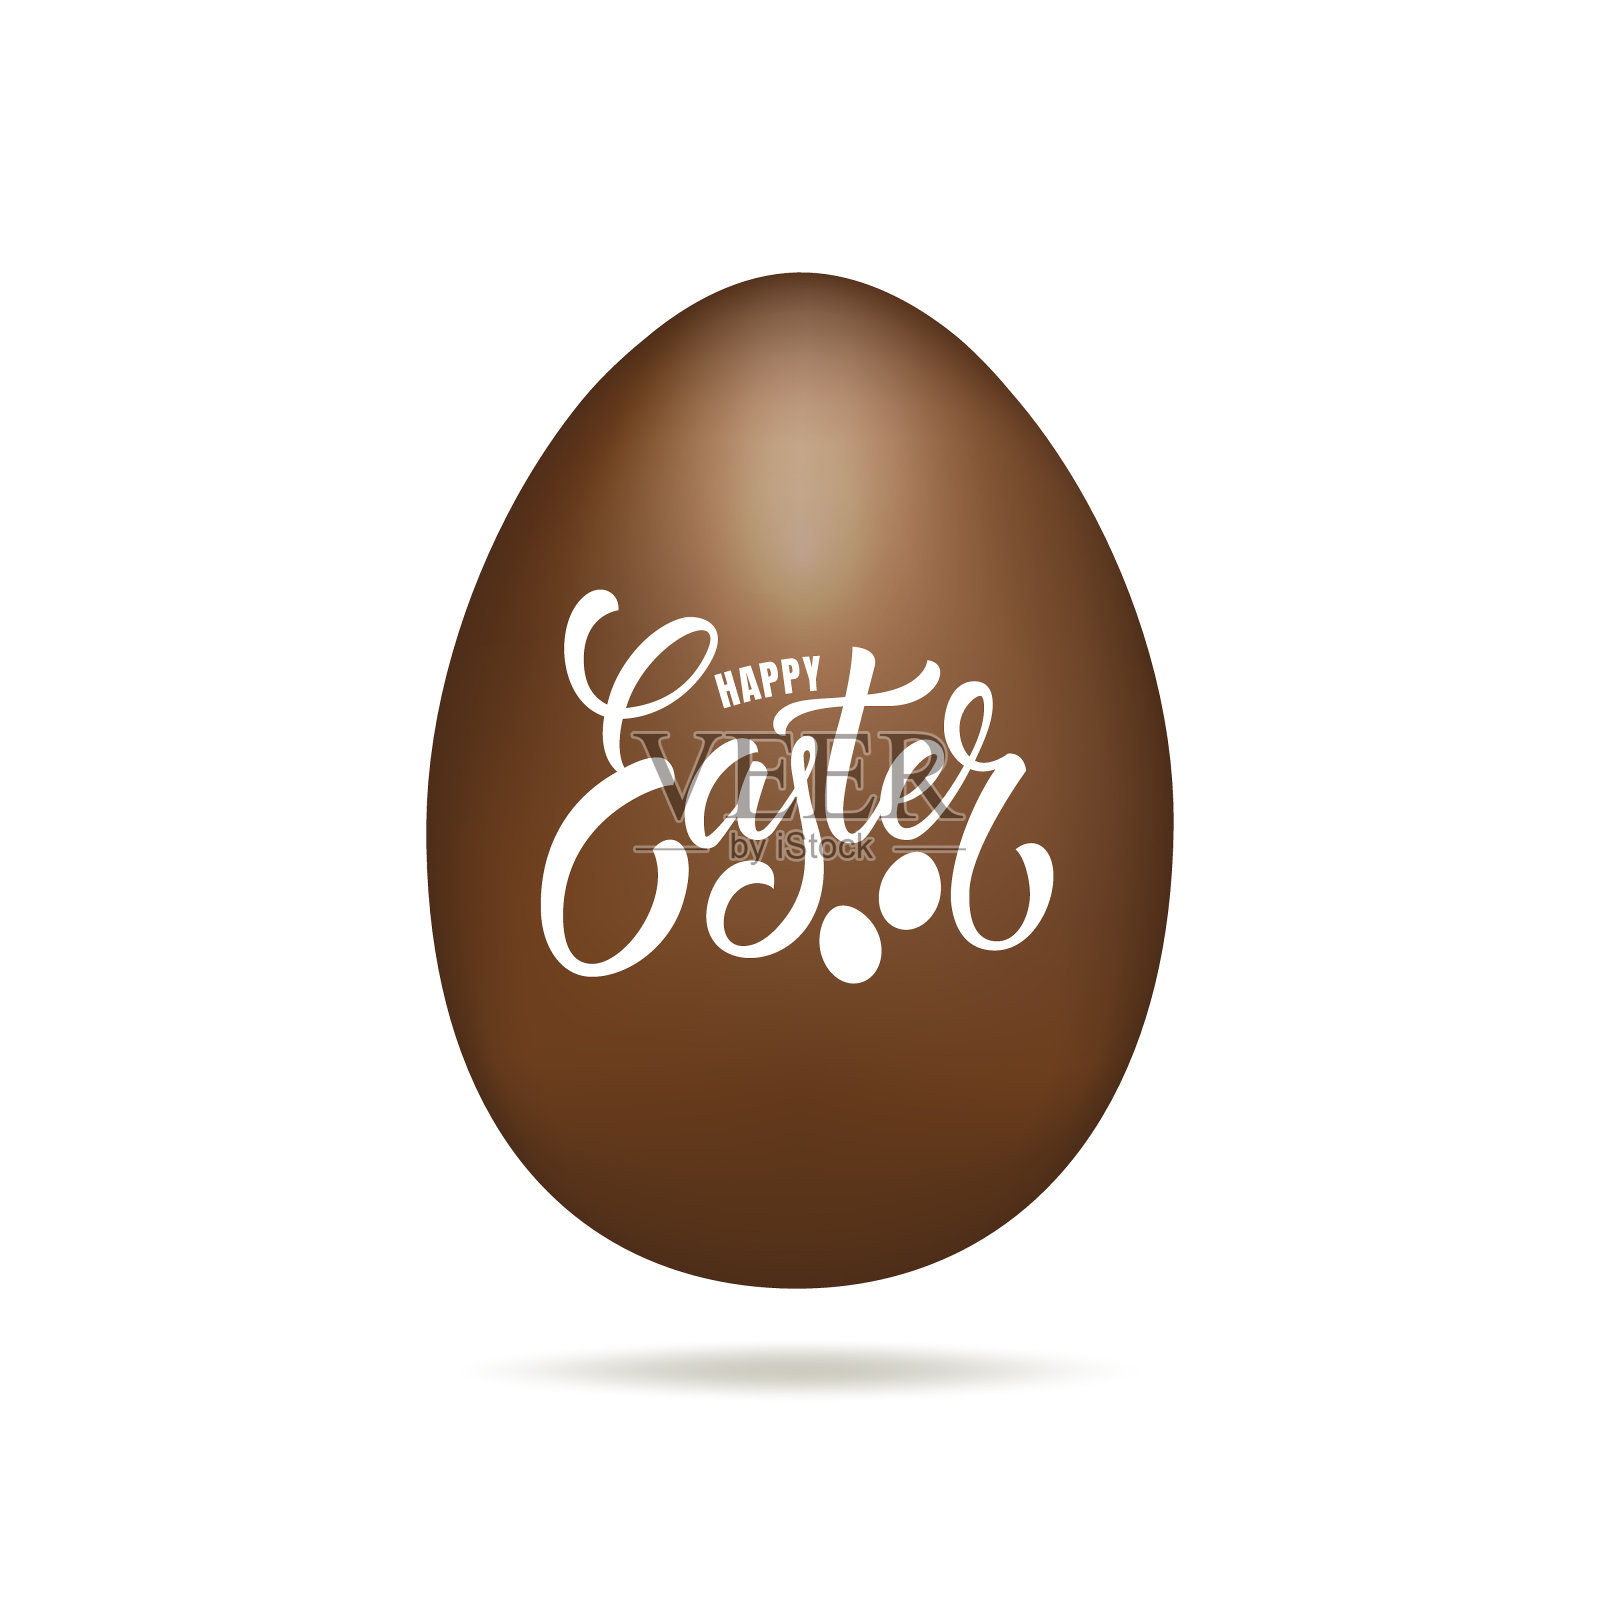 复活节彩蛋。写着“复活节快乐”字样的巧克力蛋。复活节节日设计元素设计模板素材